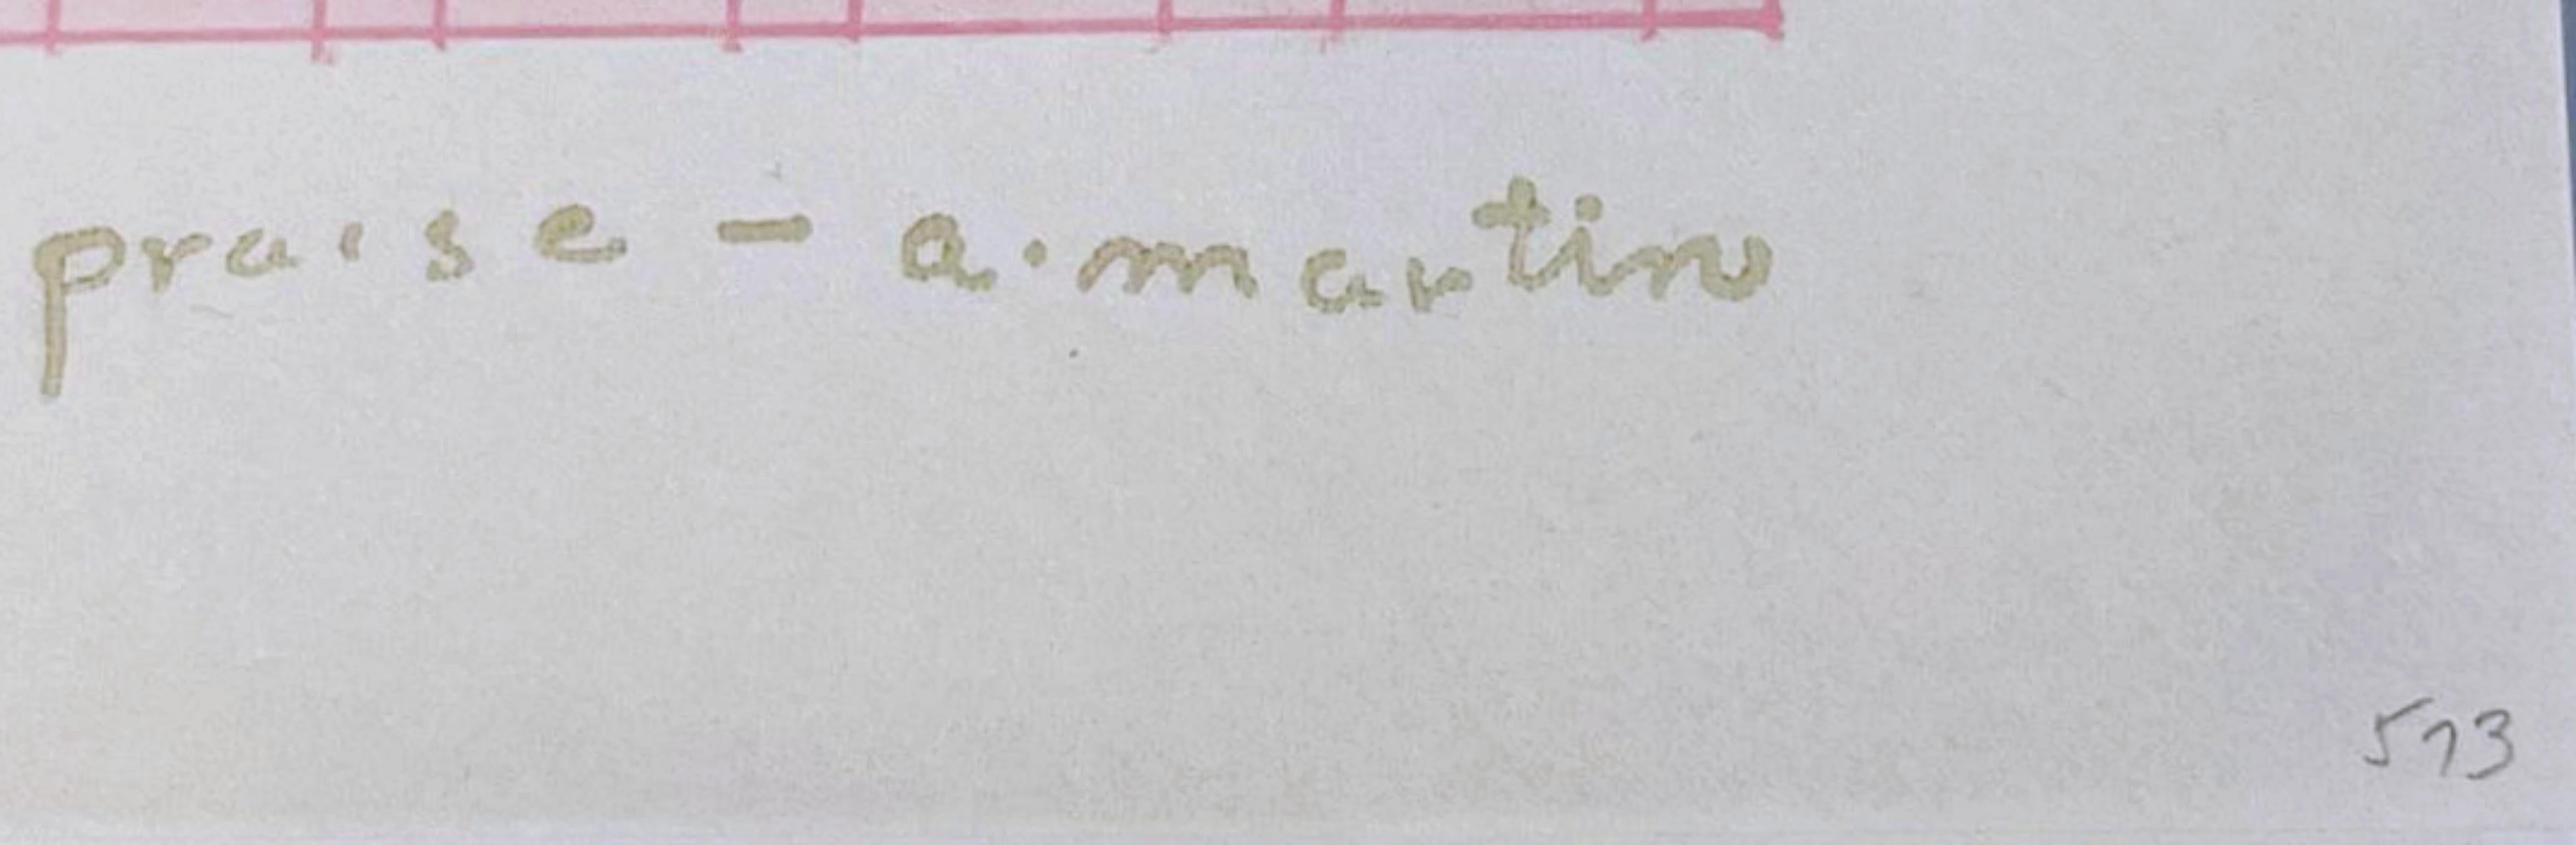 AGNES MARTIN
Louanges, 1976
Lithographie sur papier Dalton Natural Bond. Signature dorée sur le devant
Numéroté 593 au crayon au recto, de l'édition limitée à 1000 exemplaires.
Accompagné de l'enveloppe originale (voir photo)
11 × 11 pouces
Non